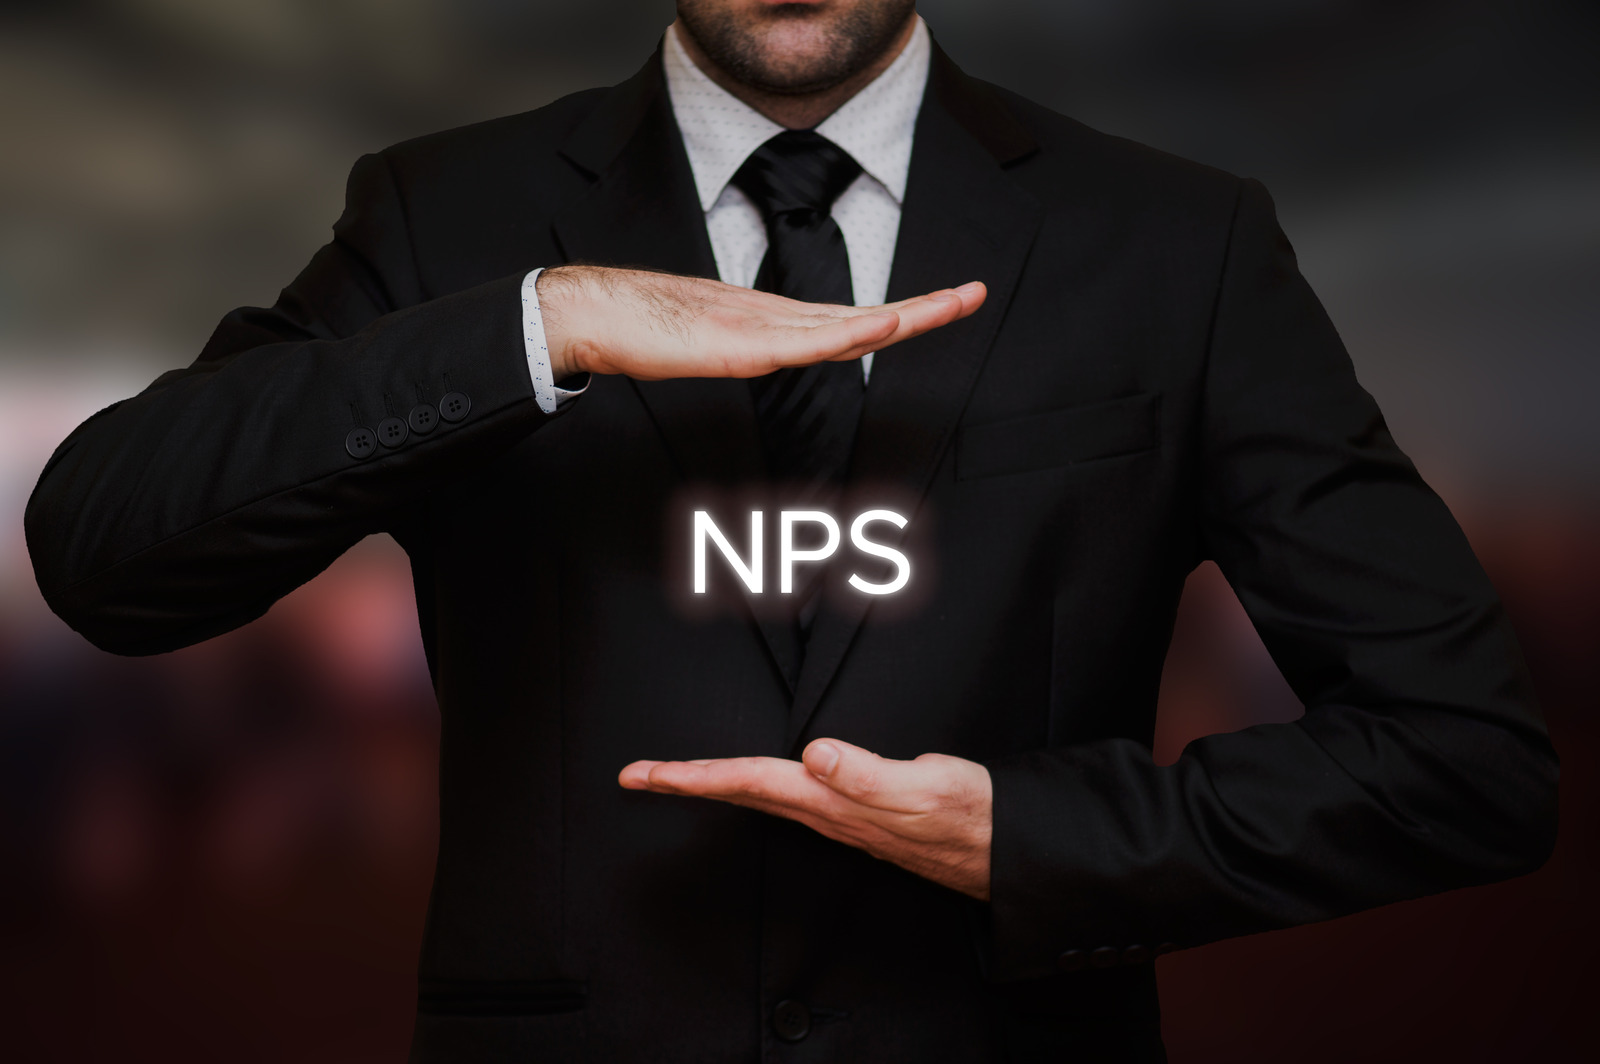 Net Promoter score (NPS)